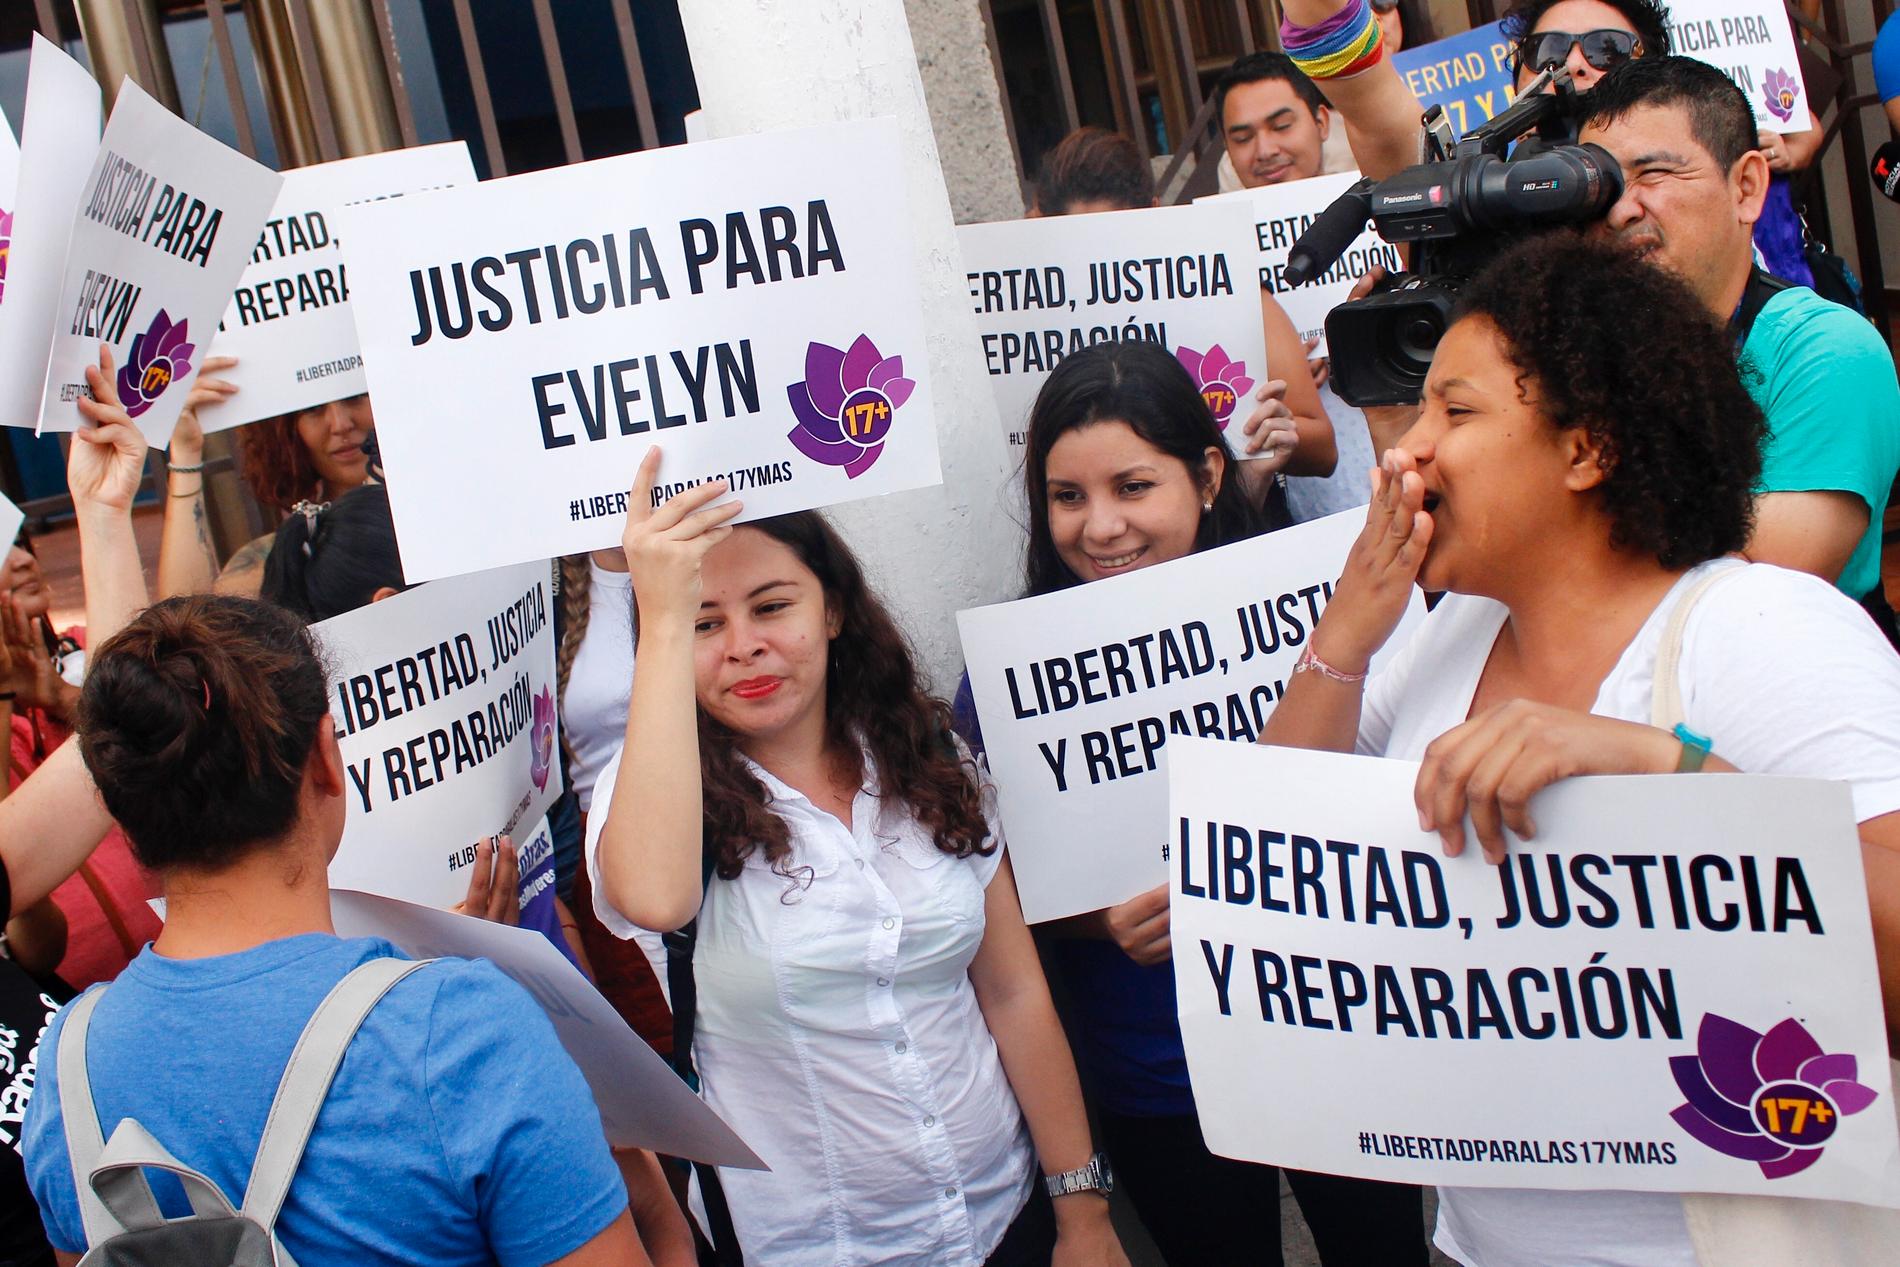 Kvinnorättsaktivister under en demonstration utanför San Salvador den 15 juli 2019 med krav på frisläppandet av en annan abortanklagad kvinna.